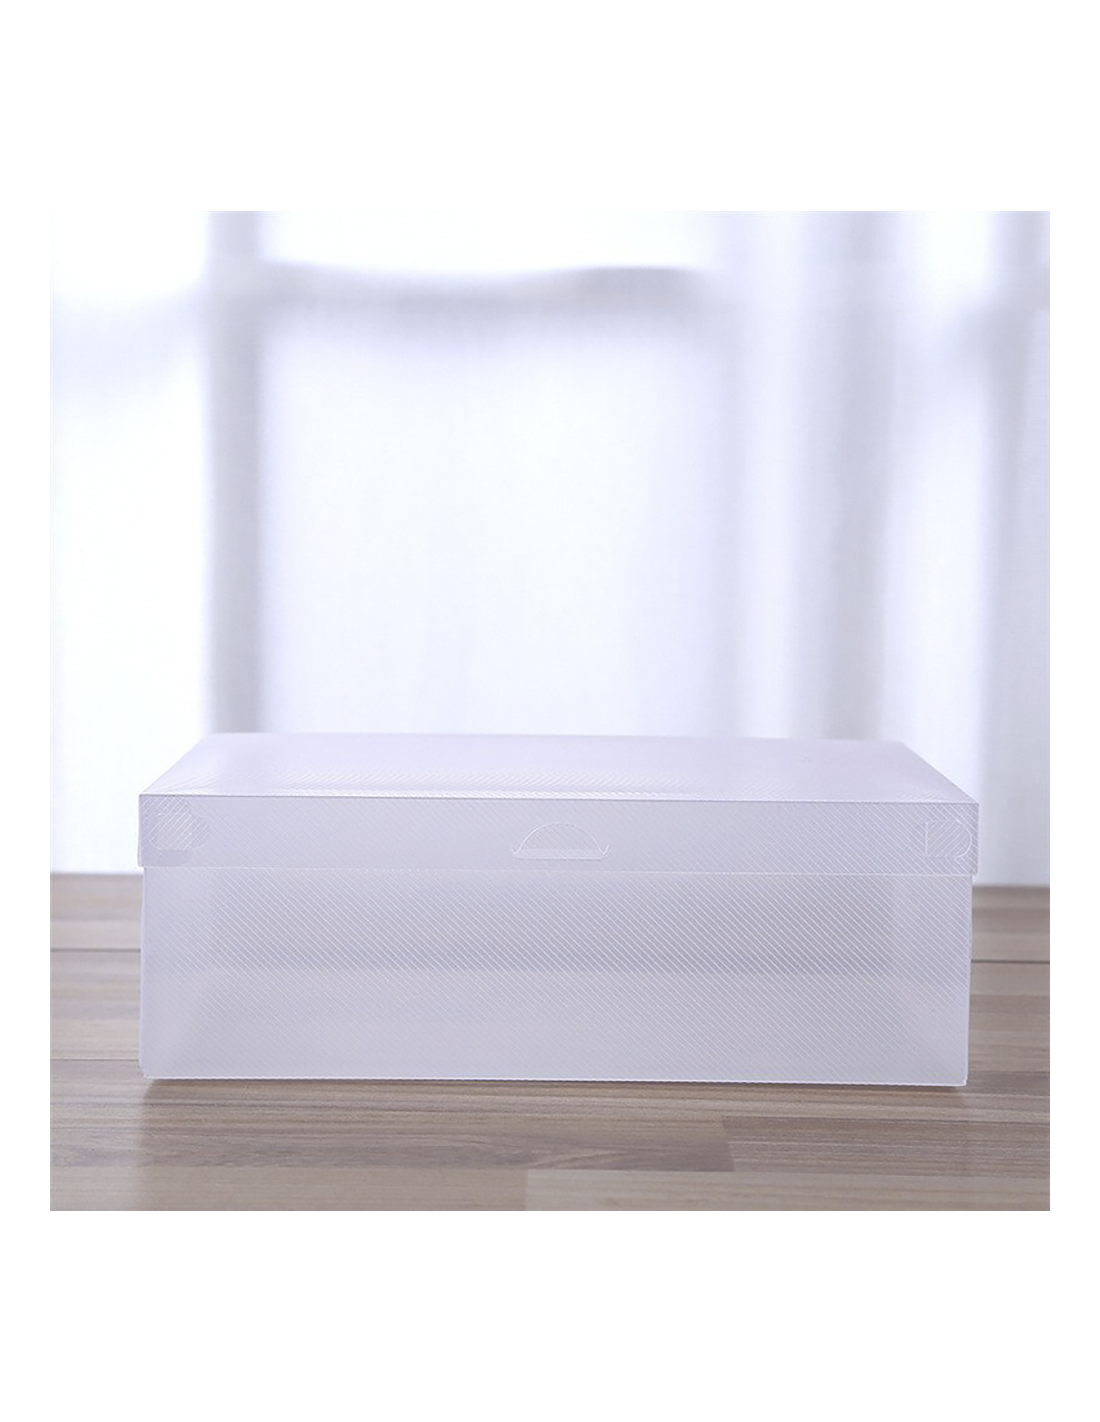 Set 10 Pz Scatola Contenitore Organizzatore Scarpe Trasparent Box  Salvaspazio